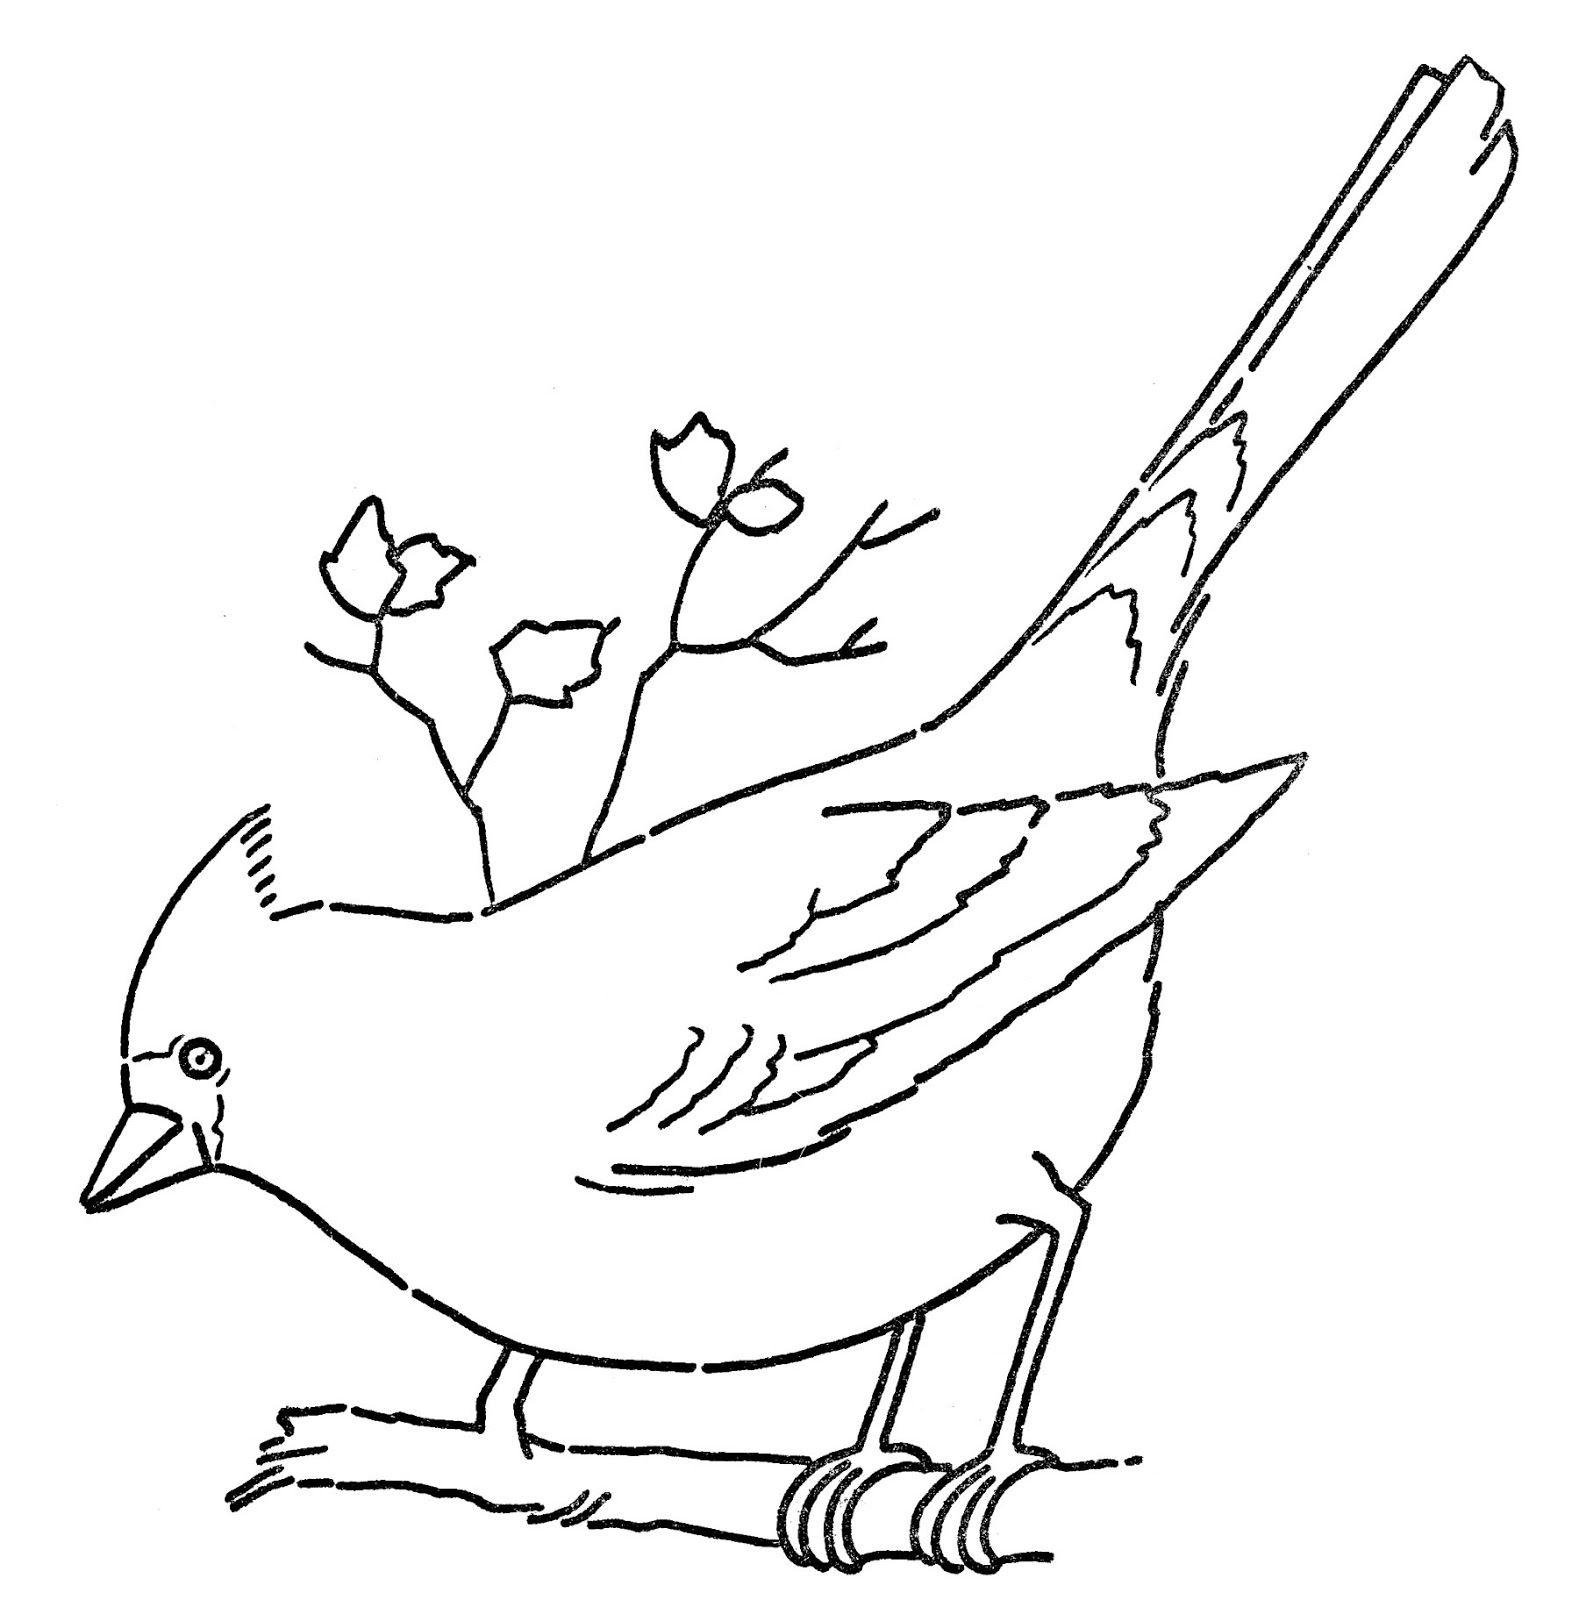 White and Red Bird Logo - Free Free Cardinal Clipart, Download Free Clip Art, Free Clip Art on ...